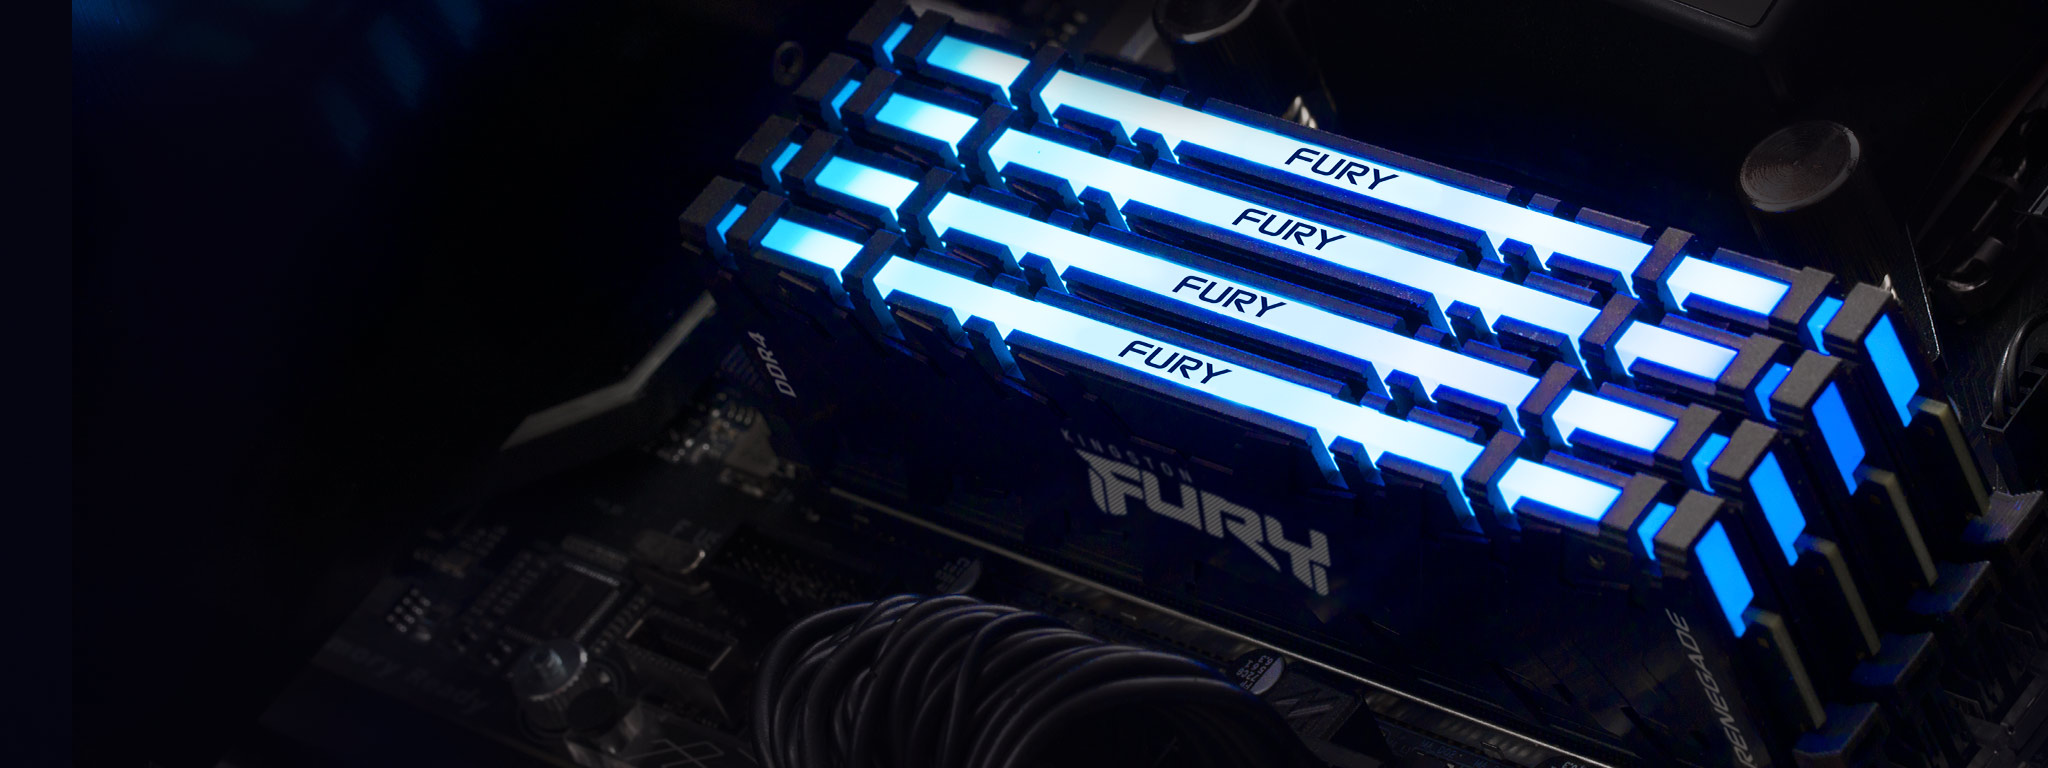 โมดูลหน่วยความจำ Kingston FURY Renegade DDR4 RGB 4 ชุดส่องแสงเป็นสีน้ำเงิน และติดตั้งอยู่ในช่องหน่วยความจำบนเมนบอร์ด